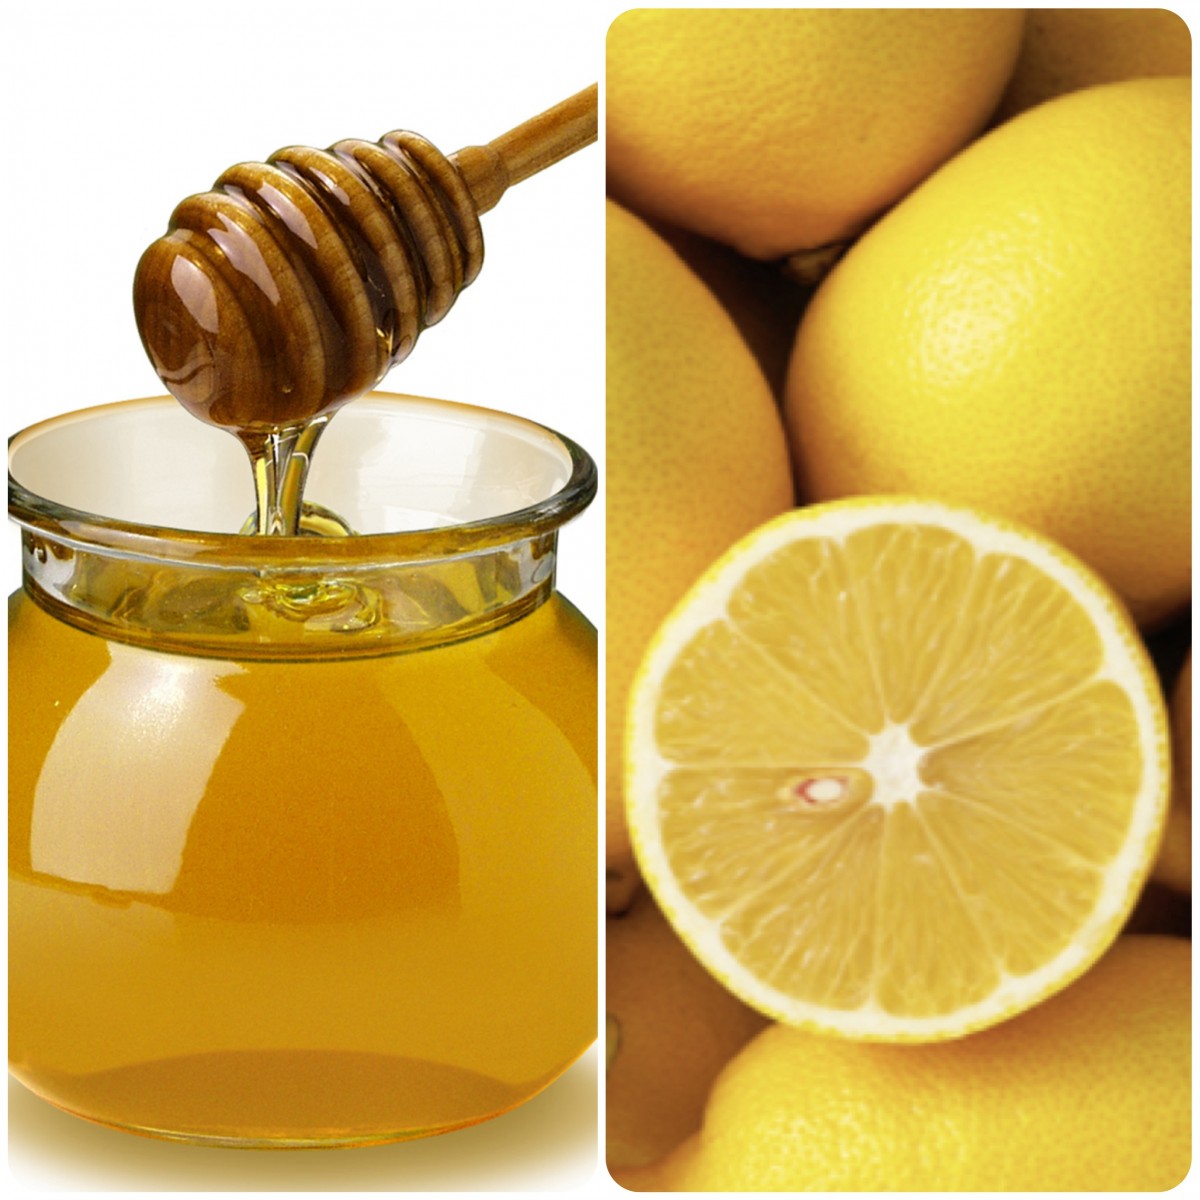 العسل والليمون من أهم مكونات العناية بالبشرة